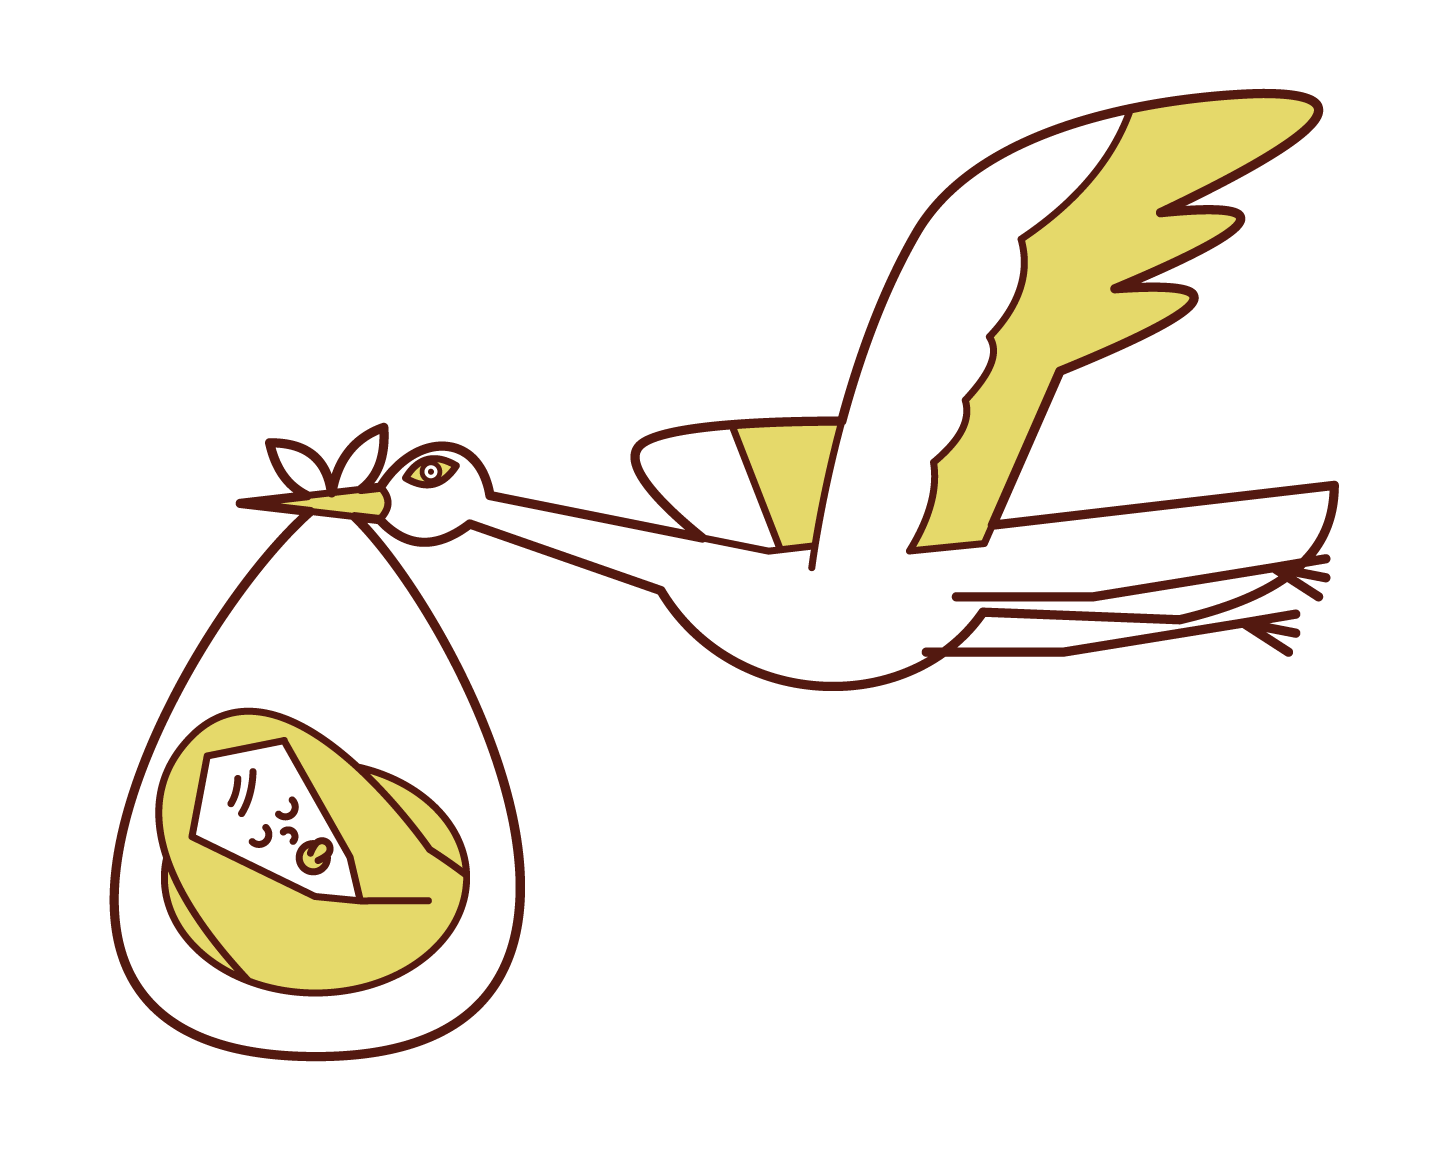 Illustration of a stork